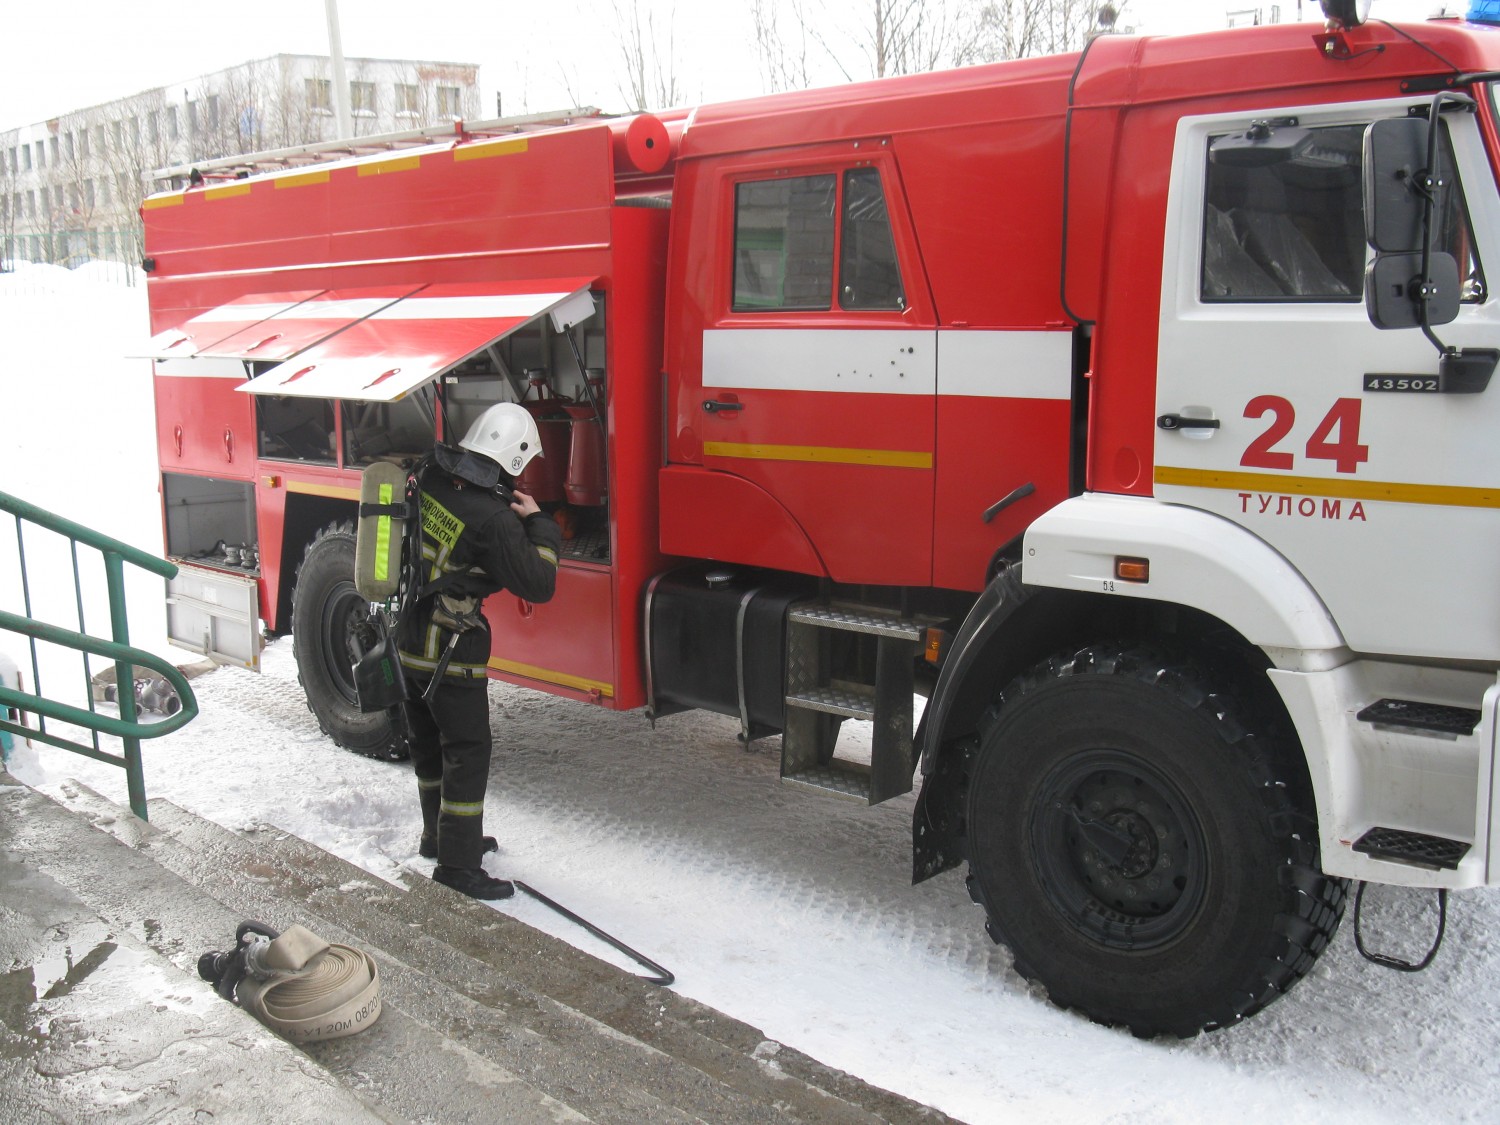 Пч 24. 24 Пожарная часть Москва. Пожарная часть 24 Азнакаево. Пожарная часть в Туломе.